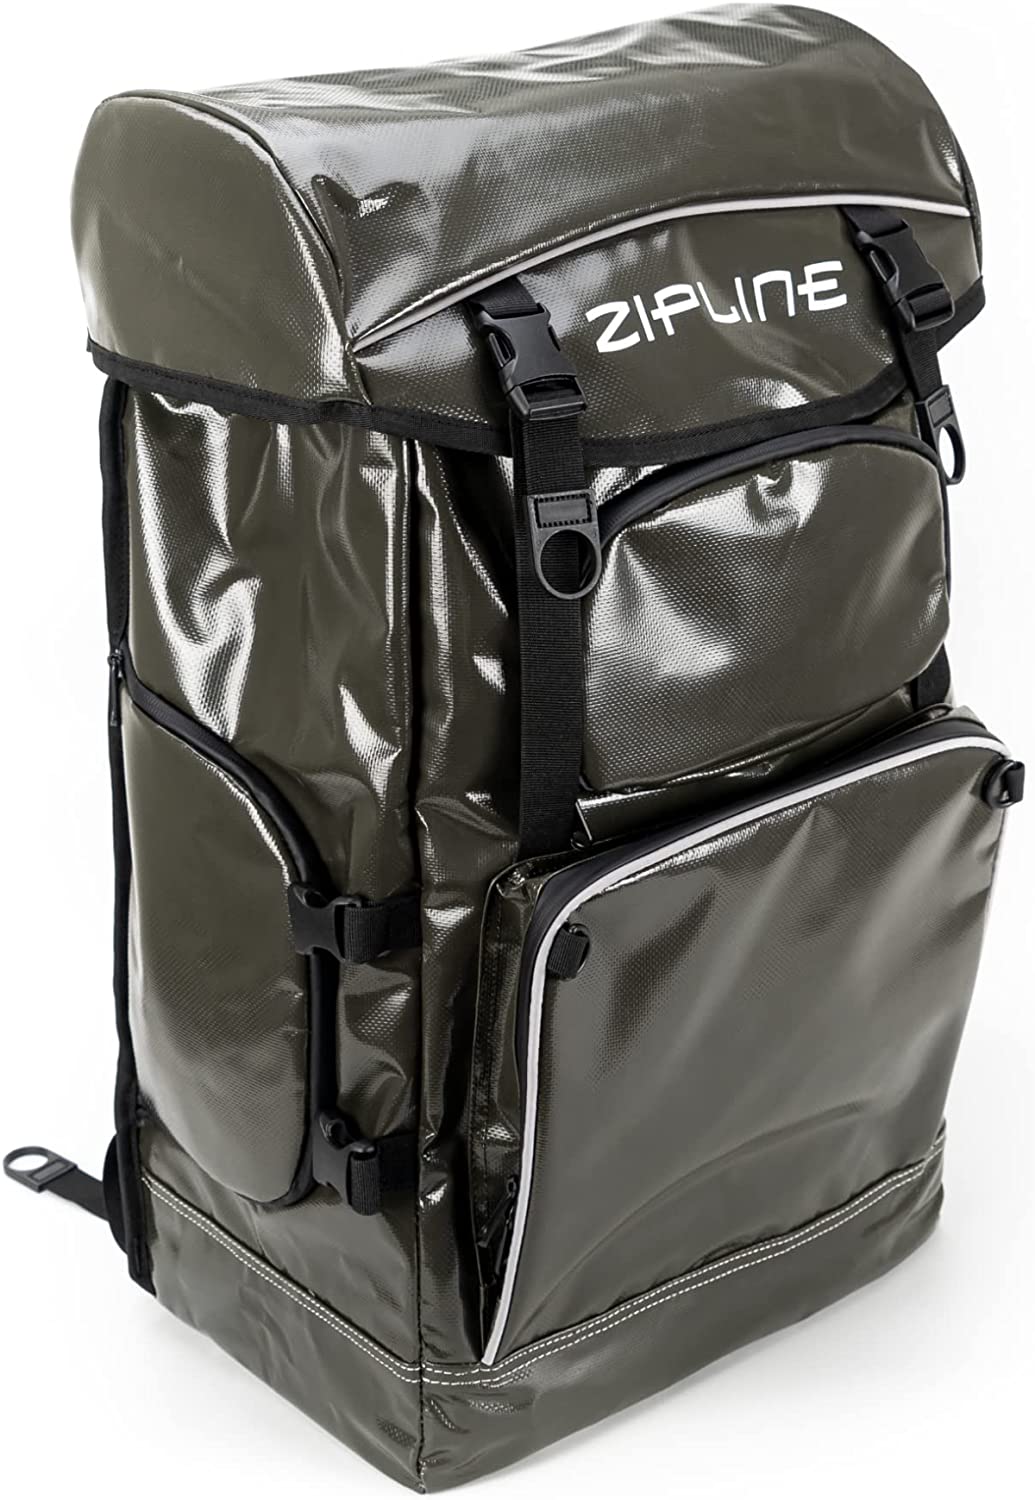 Zipline Ski World Cup Pocketed Ski Boot Bag Backpack